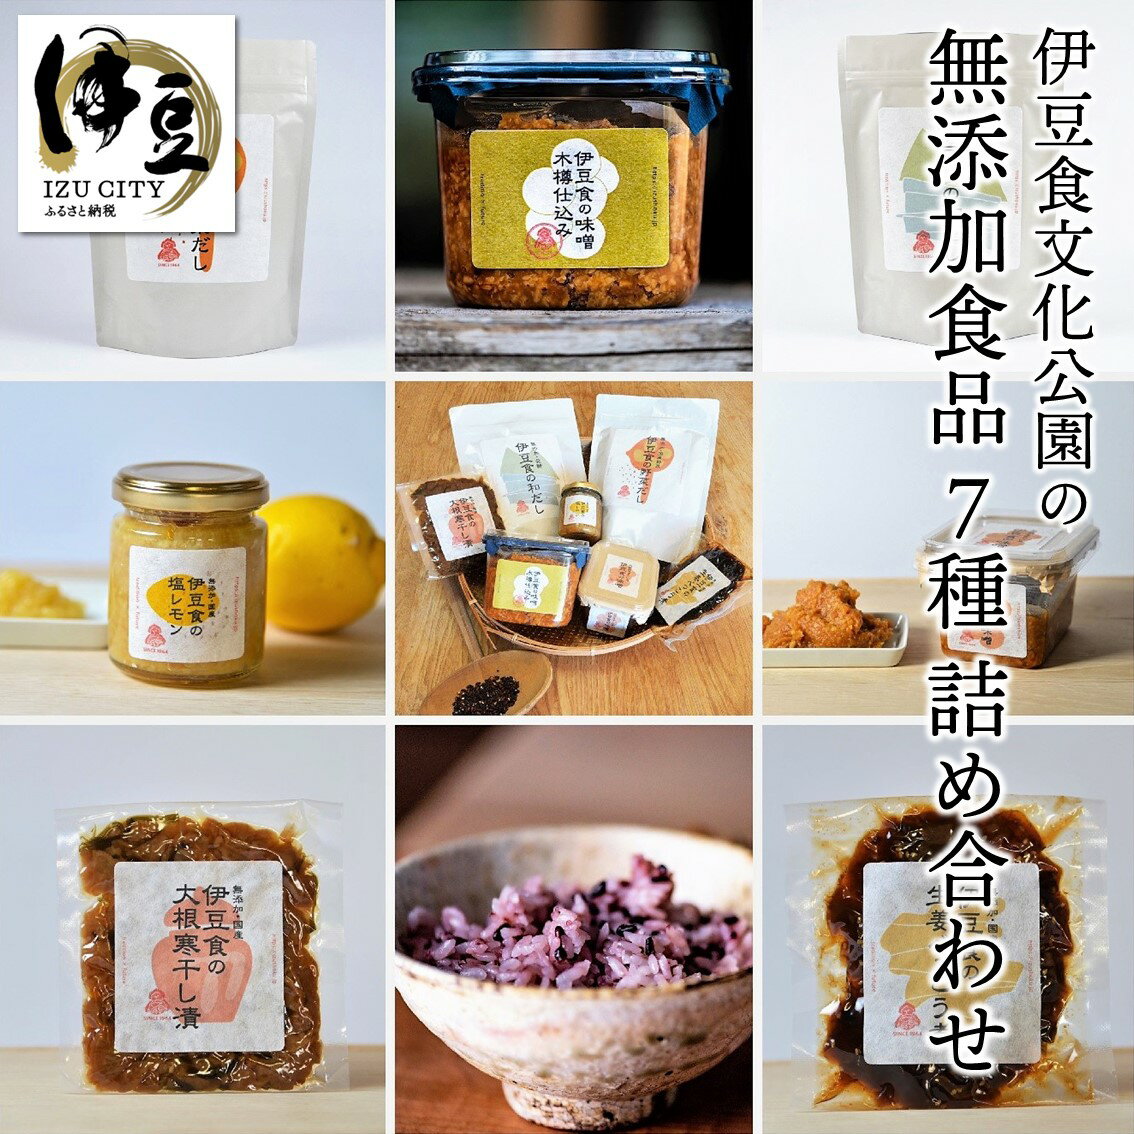 【ふるさと納税】 伊豆食文化公園の無添加食品 7種 詰め合わせセット B-063